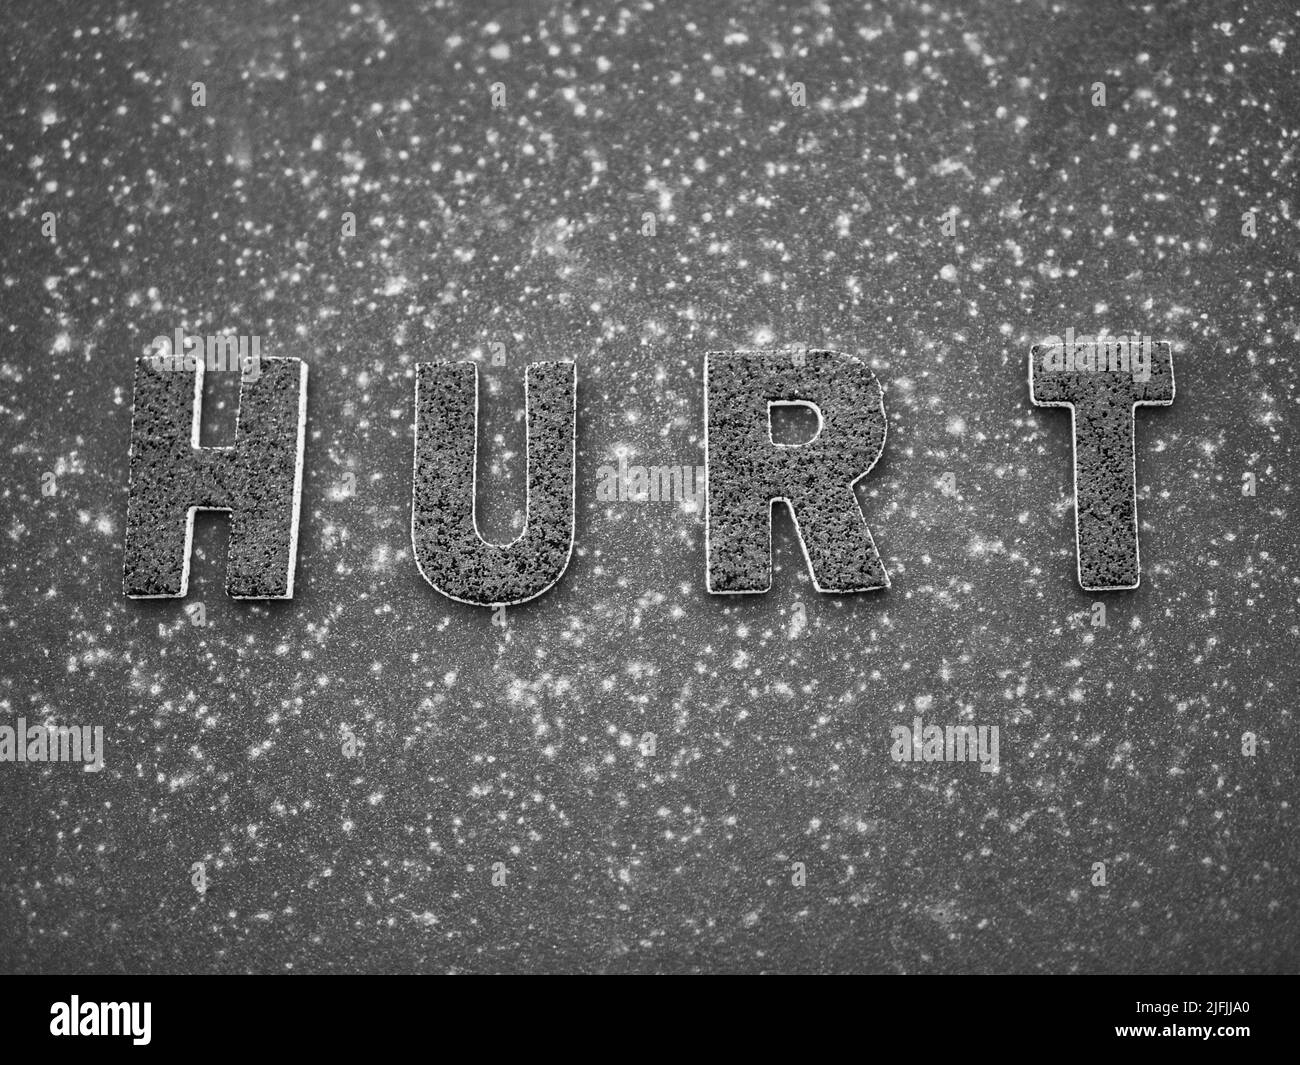 La parola 'hurt' in lettere nere su una superficie di metallo arrugginita nera. Foto Stock